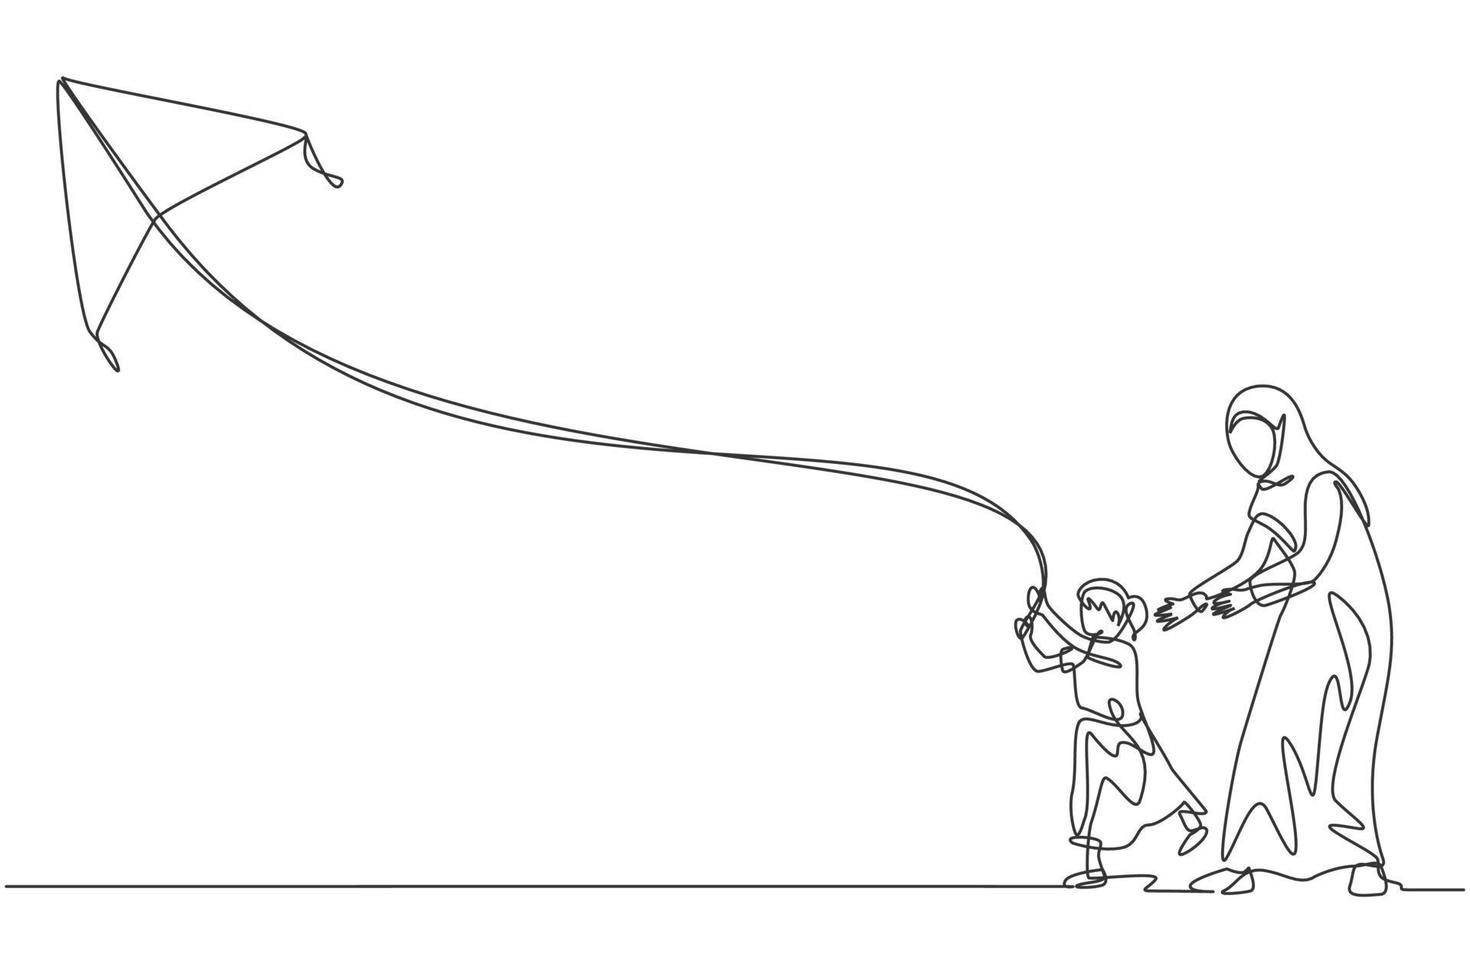 un seul dessin de jeune maman et fille arabe jouant et faisant voler un cerf-volant à l'illustration vectorielle du parc public. heureux concept parental de famille musulmane islamique. conception de dessin de ligne continue moderne vecteur